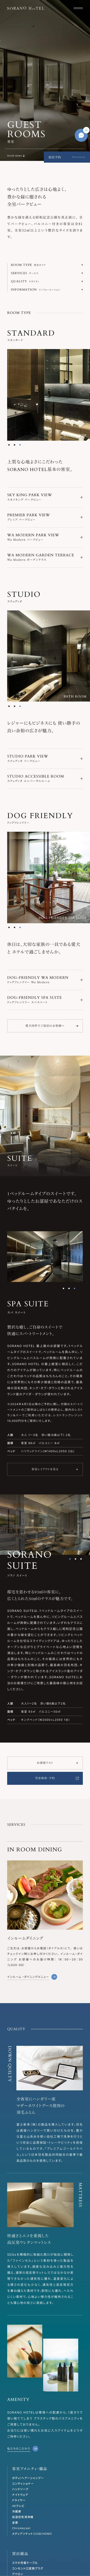 【公式】SORANO HOTEL | 東京 立川のウェルビーイングホテルのモバイルサイズの画像